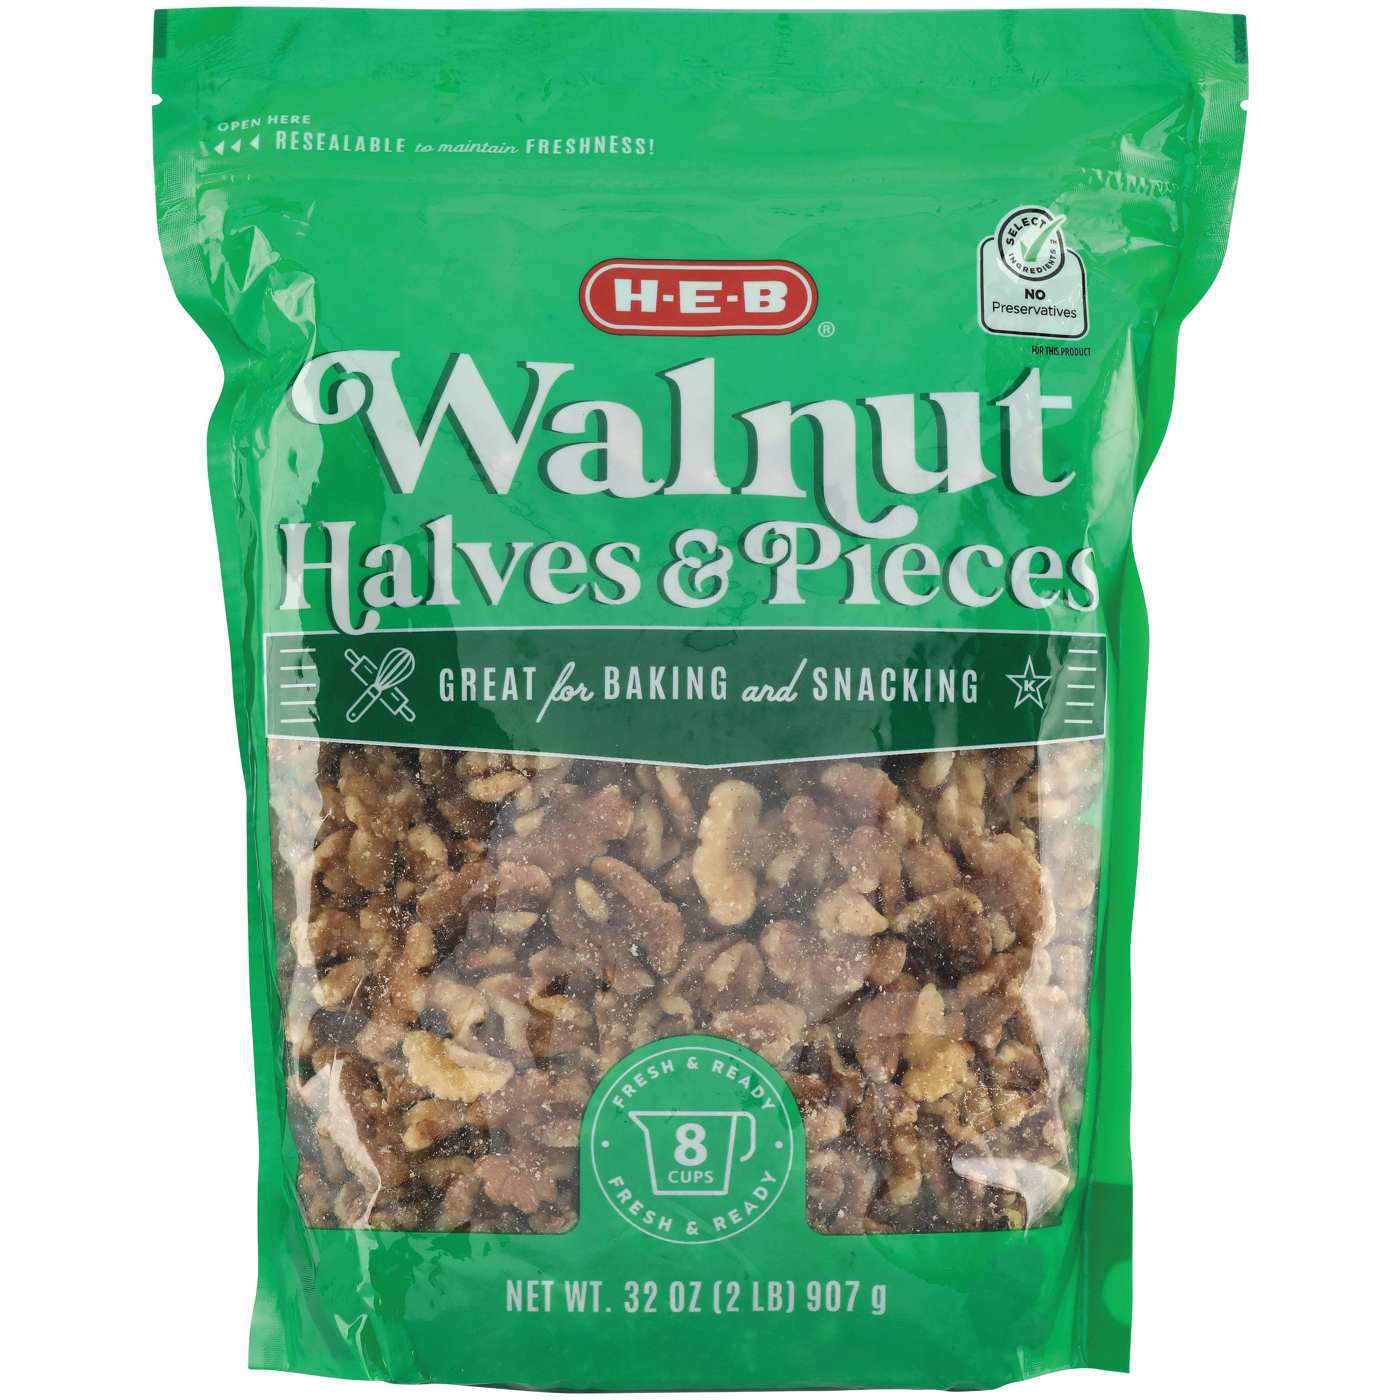 H-E-B Walnut Halves & Pieces; image 2 of 2